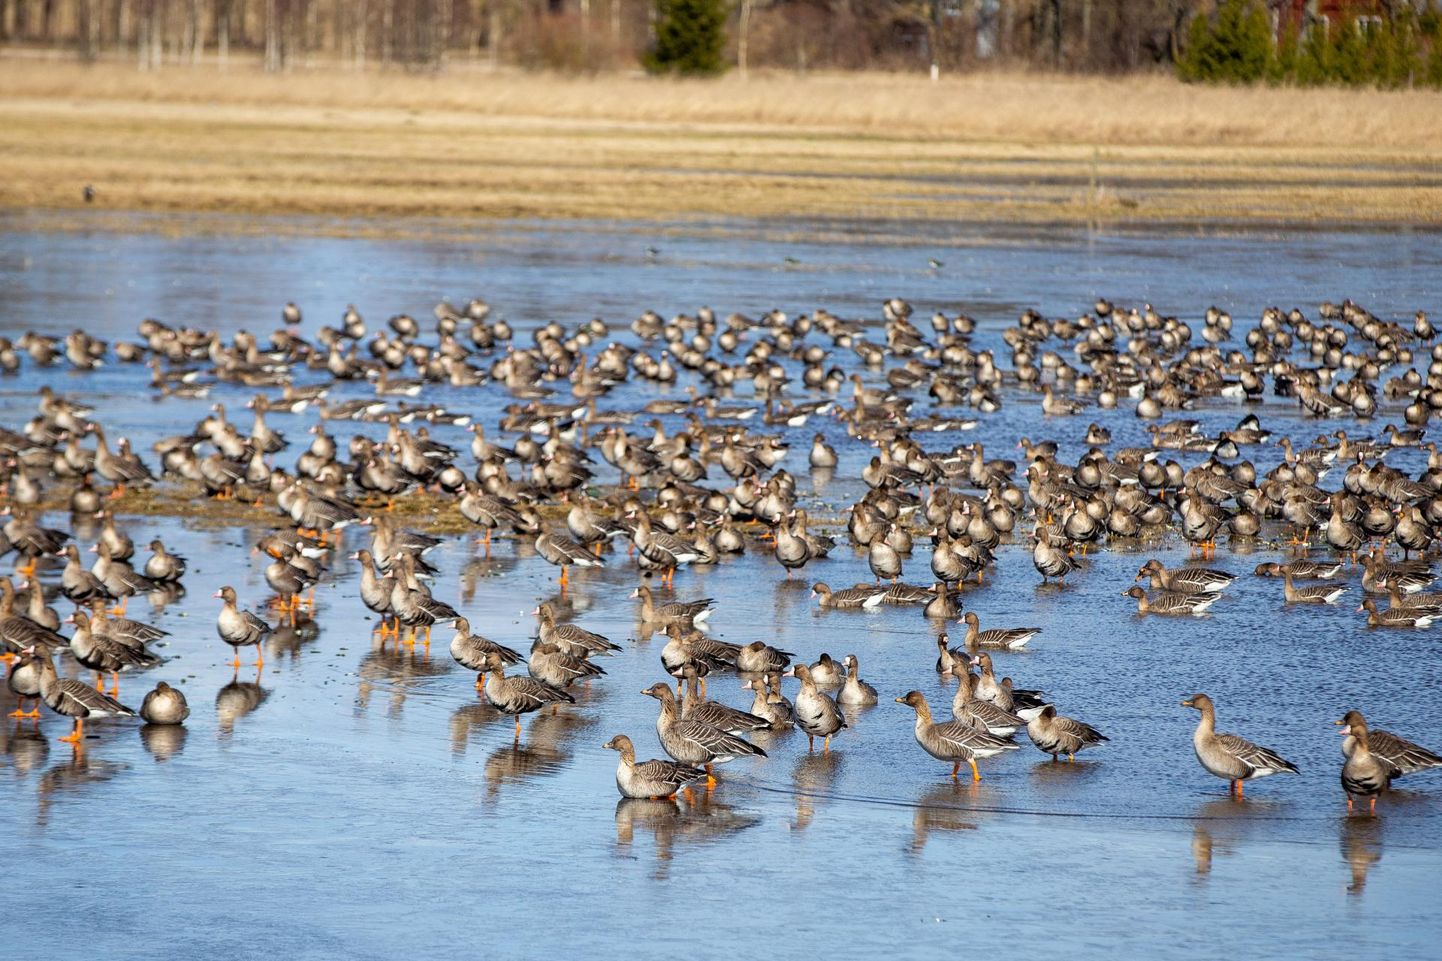 Ornitoloogiaühing teeb sel aastal hanede seiret ja kutsub vabatahtlikke linnutundjaid osalema hanede loendamisel aprillis ja mais kõikjal Eestis.